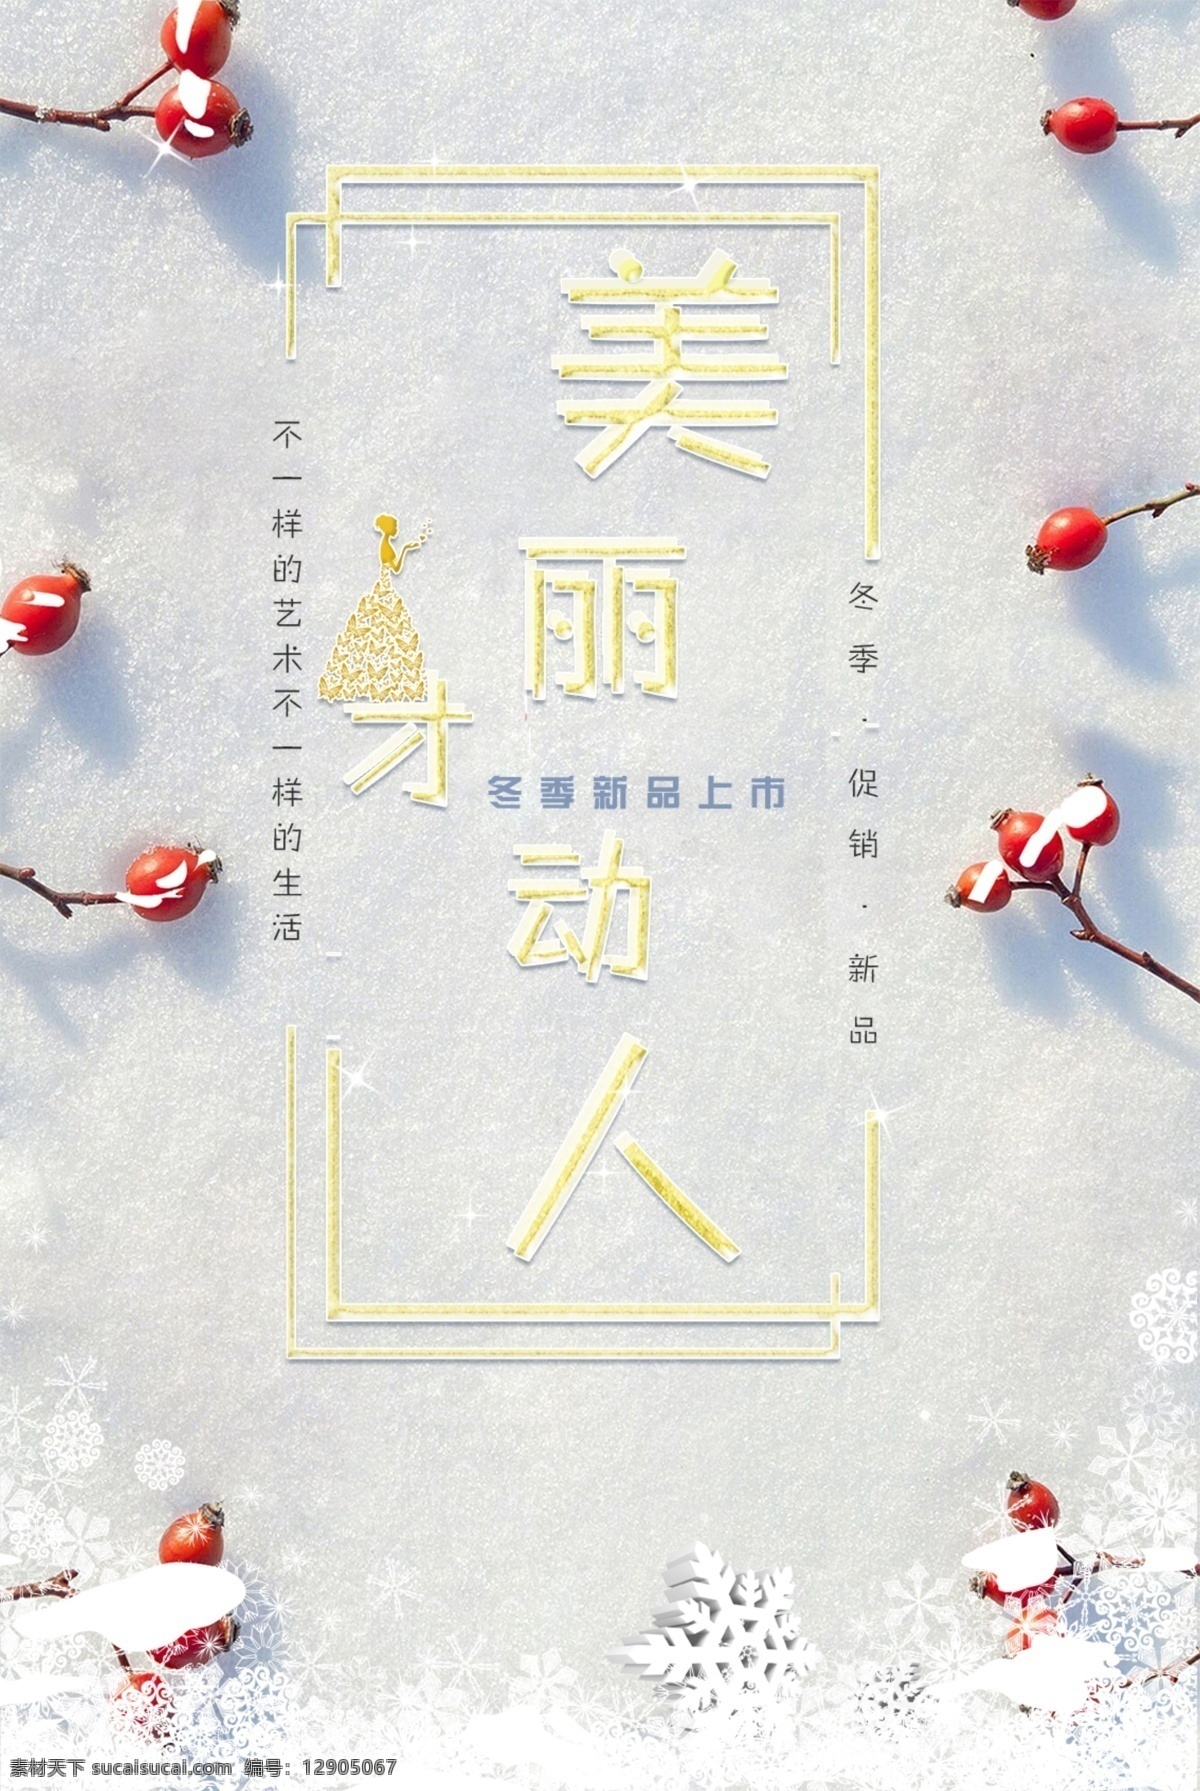 冬季 展示 宣传海报 美丽 动人 雪 星 水晶 美女 剪贴画 雪花 冬天 促销 节日